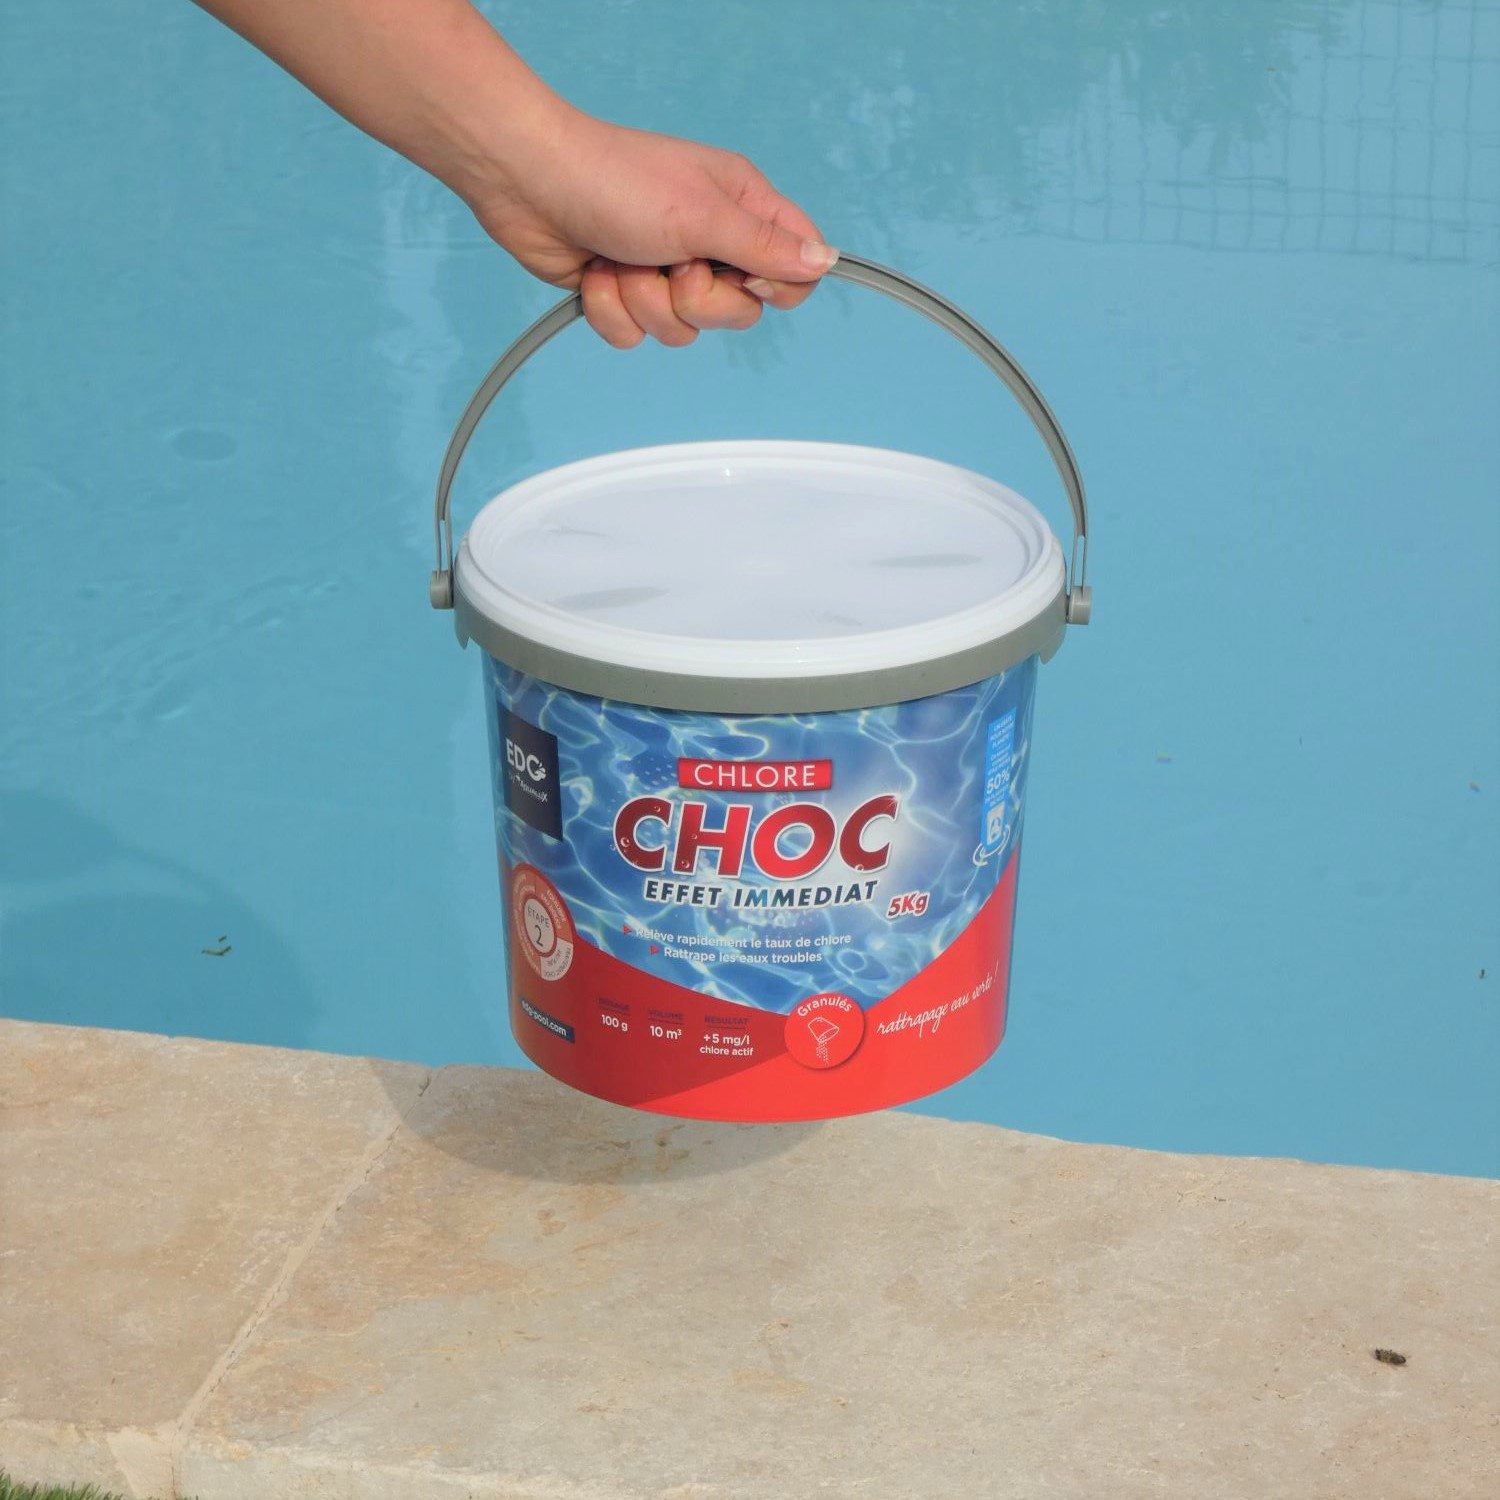 Chlore non stabilisé granulé 5 kg pour piscine